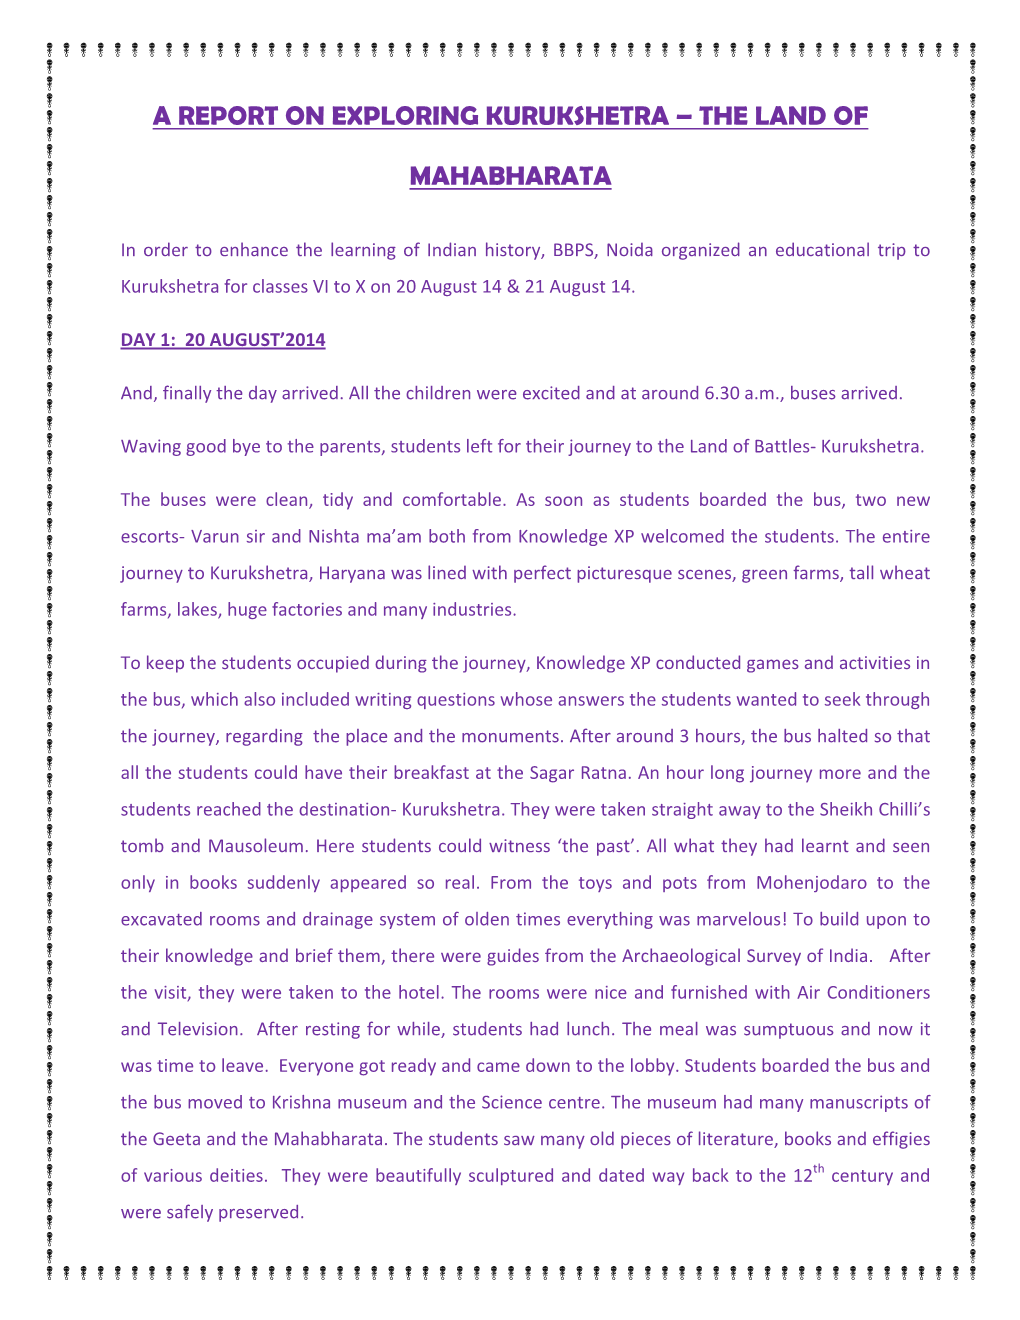 A Report on Exploring Kurukshetra – the Land Of